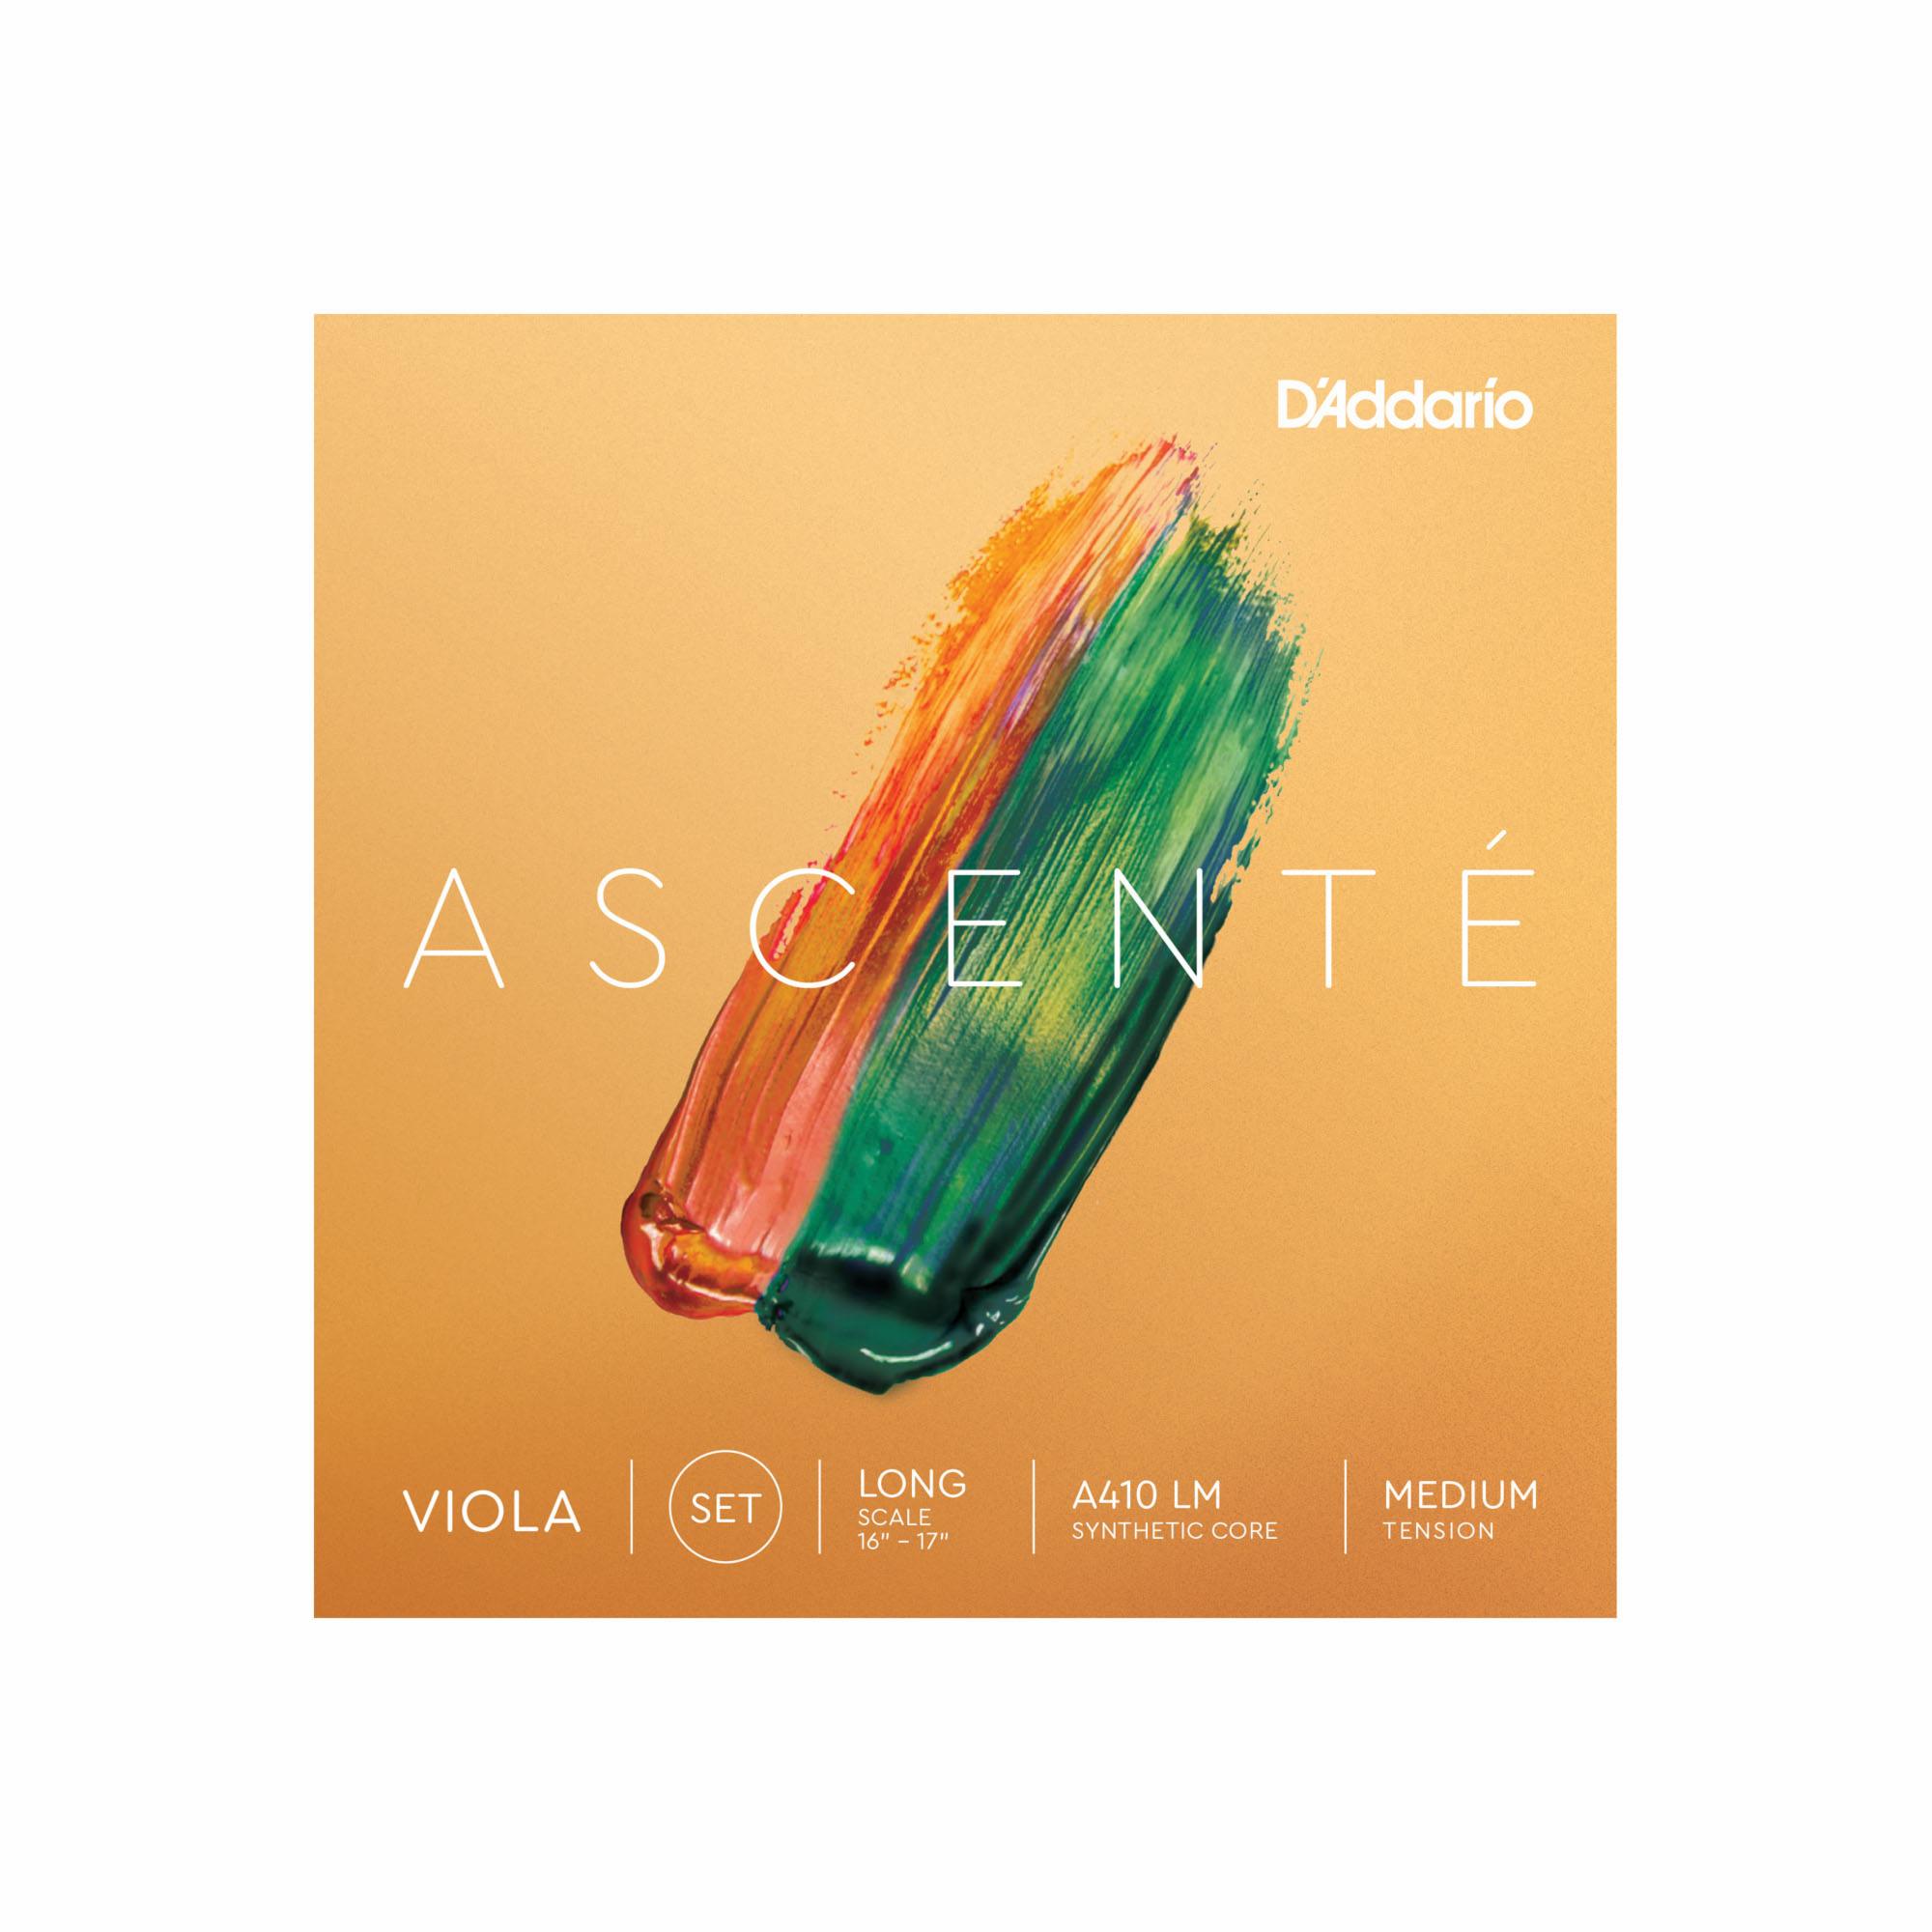 D'Addario Ascente Viola Strings